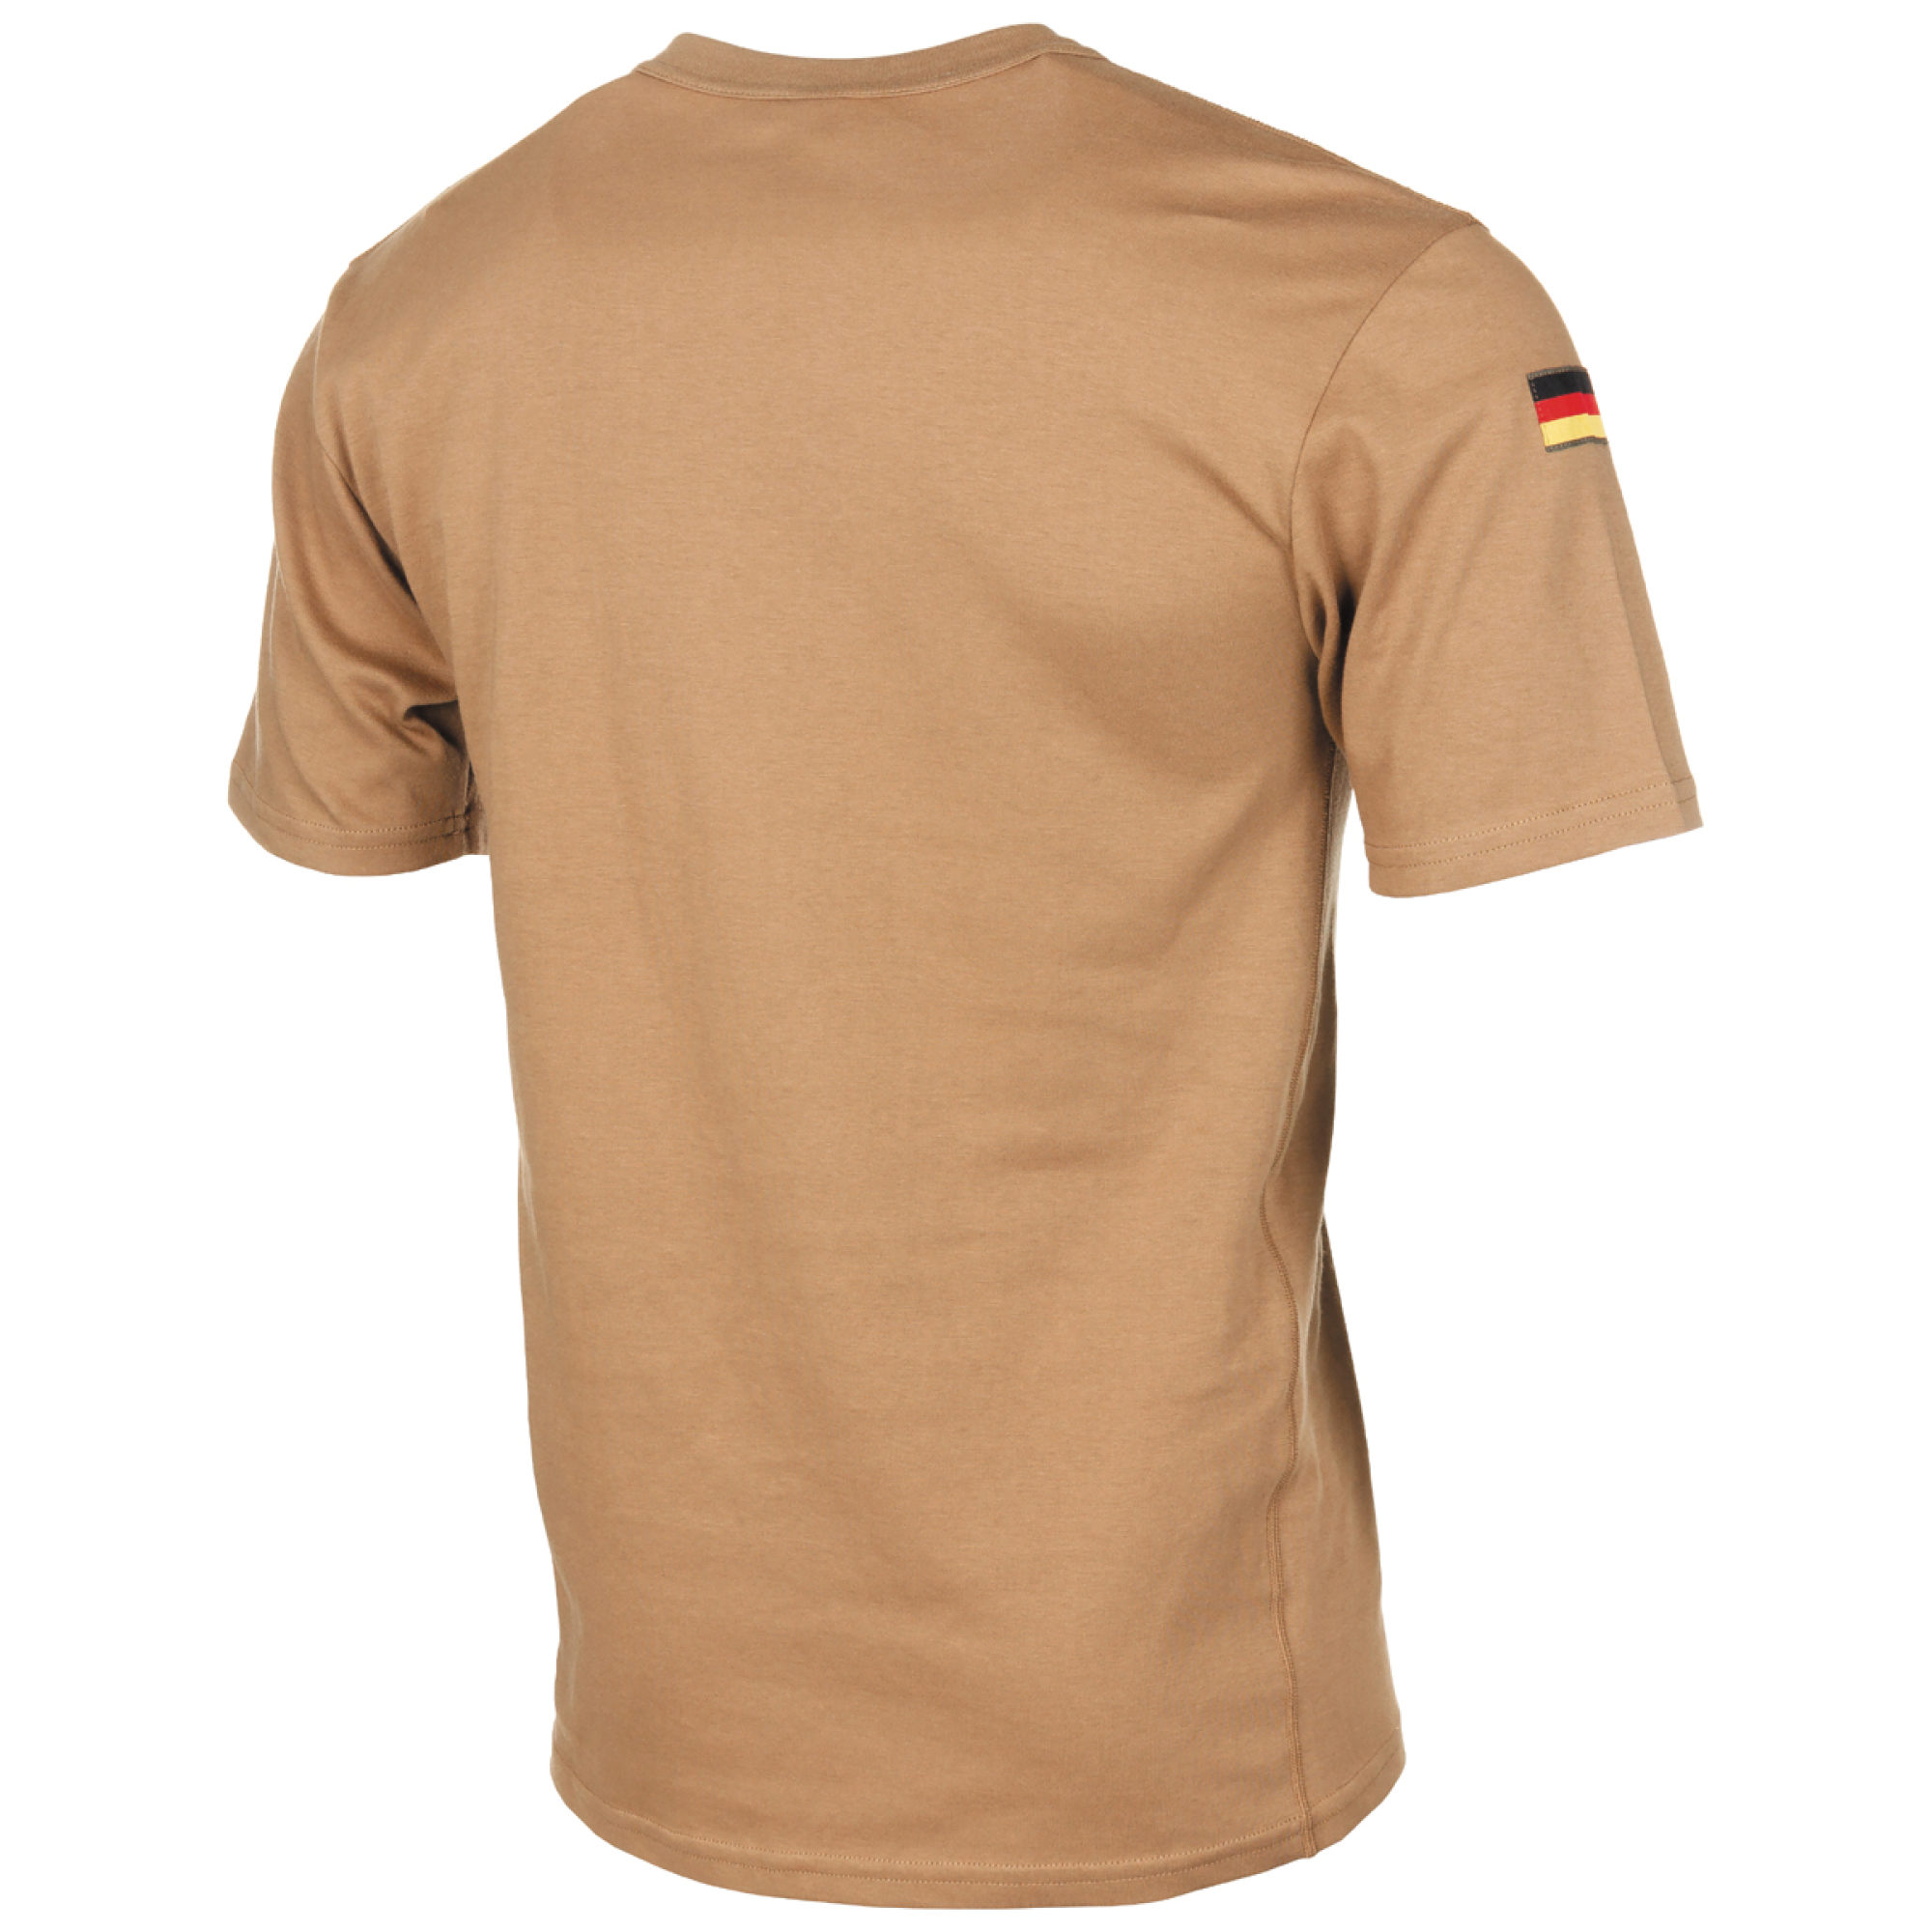 BW Tropen T-Shirt,  neuw., mit Klett und Hoheitsabzeichen (10 Stück)